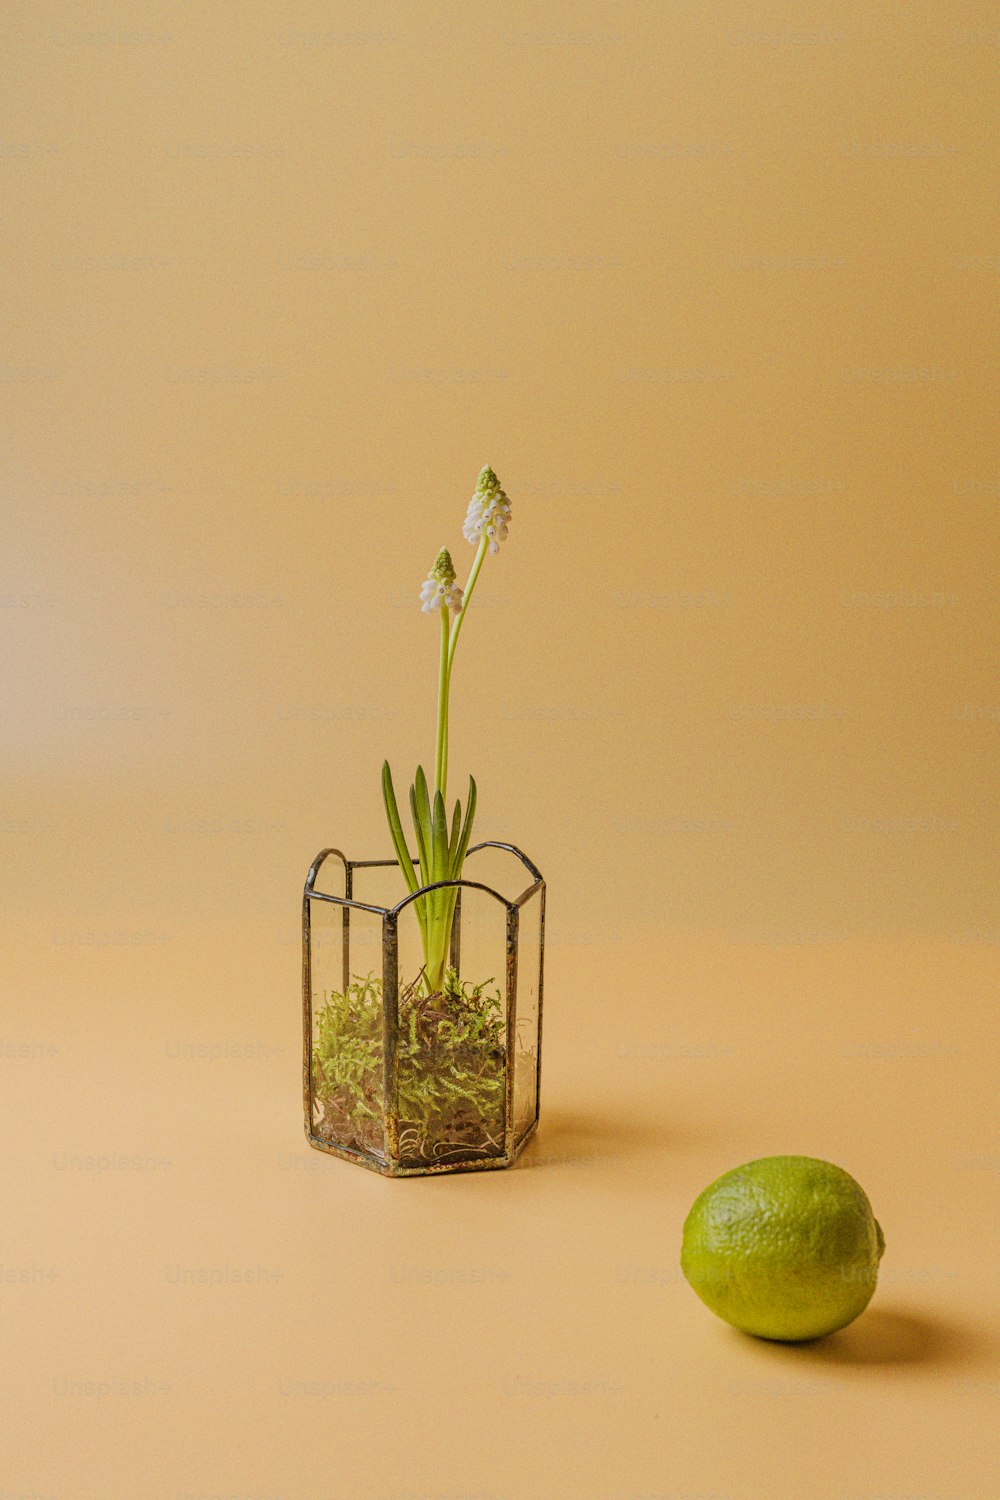 Un pequeño jarrón de vidrio con una planta junto a una lima